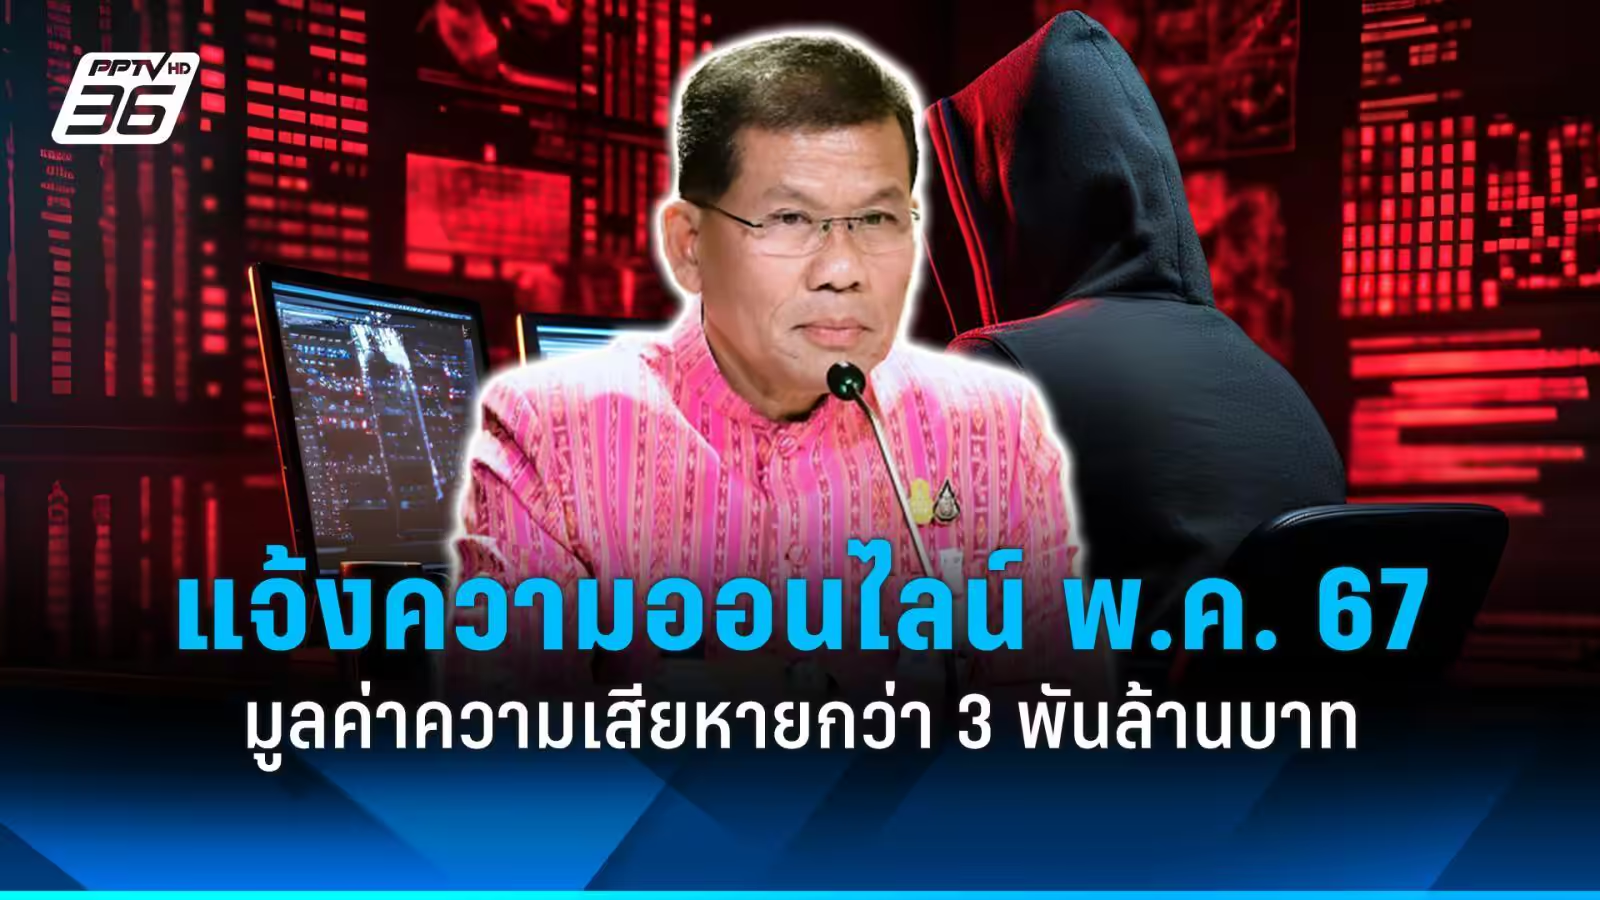 短短一月超3万人被骗损失30多亿 泰国5月在线报案数量激增